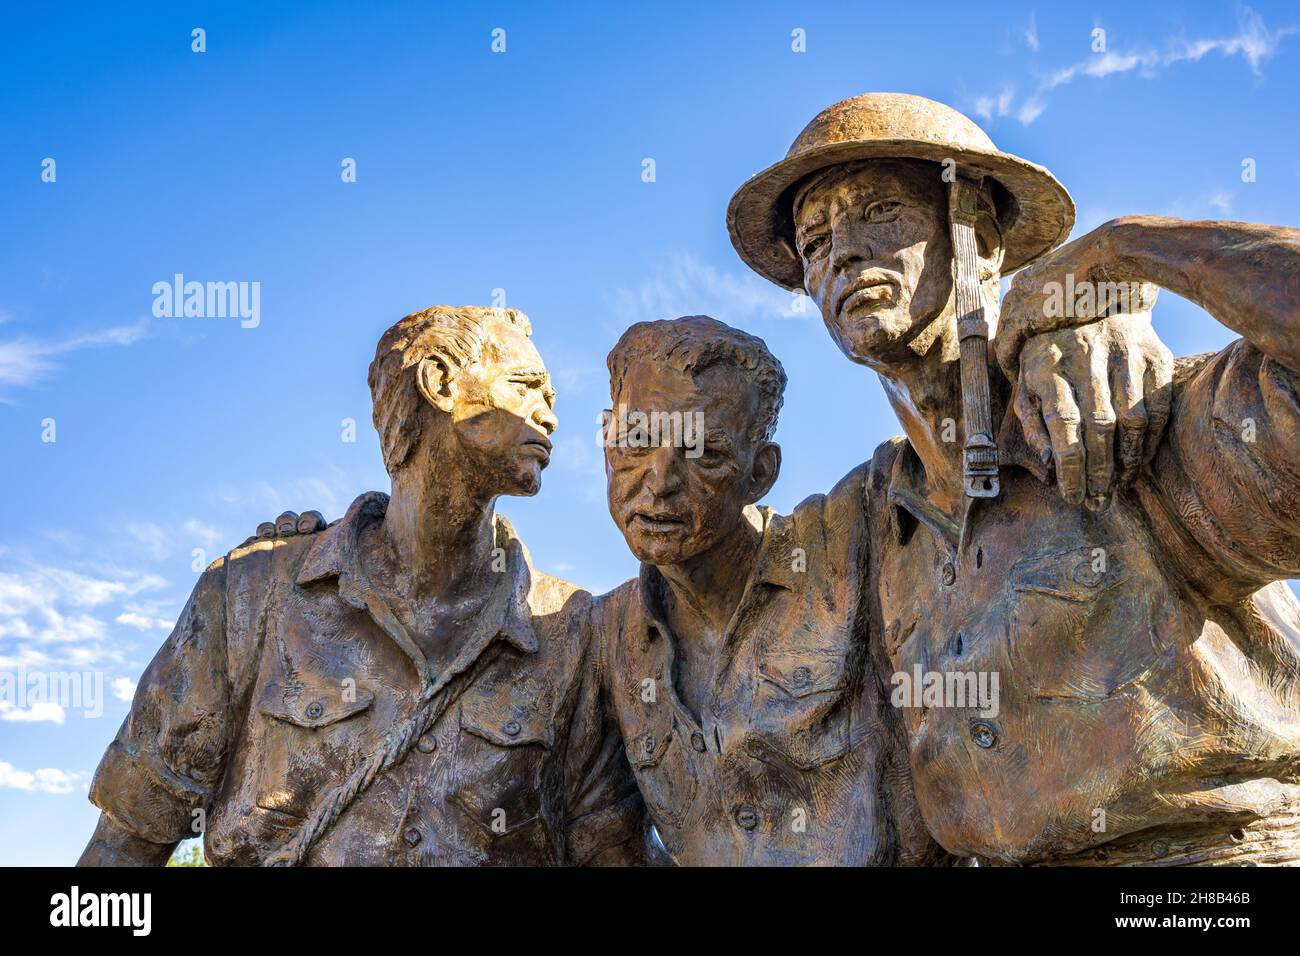 Las Cruces, NM - 11 ottobre 2021: Dettaglio degli “Eroi di Bataan”, statua commemorativa della morte di Bataan nel Veterans Park, dello scultore Kelley S. Hestir. Foto Stock